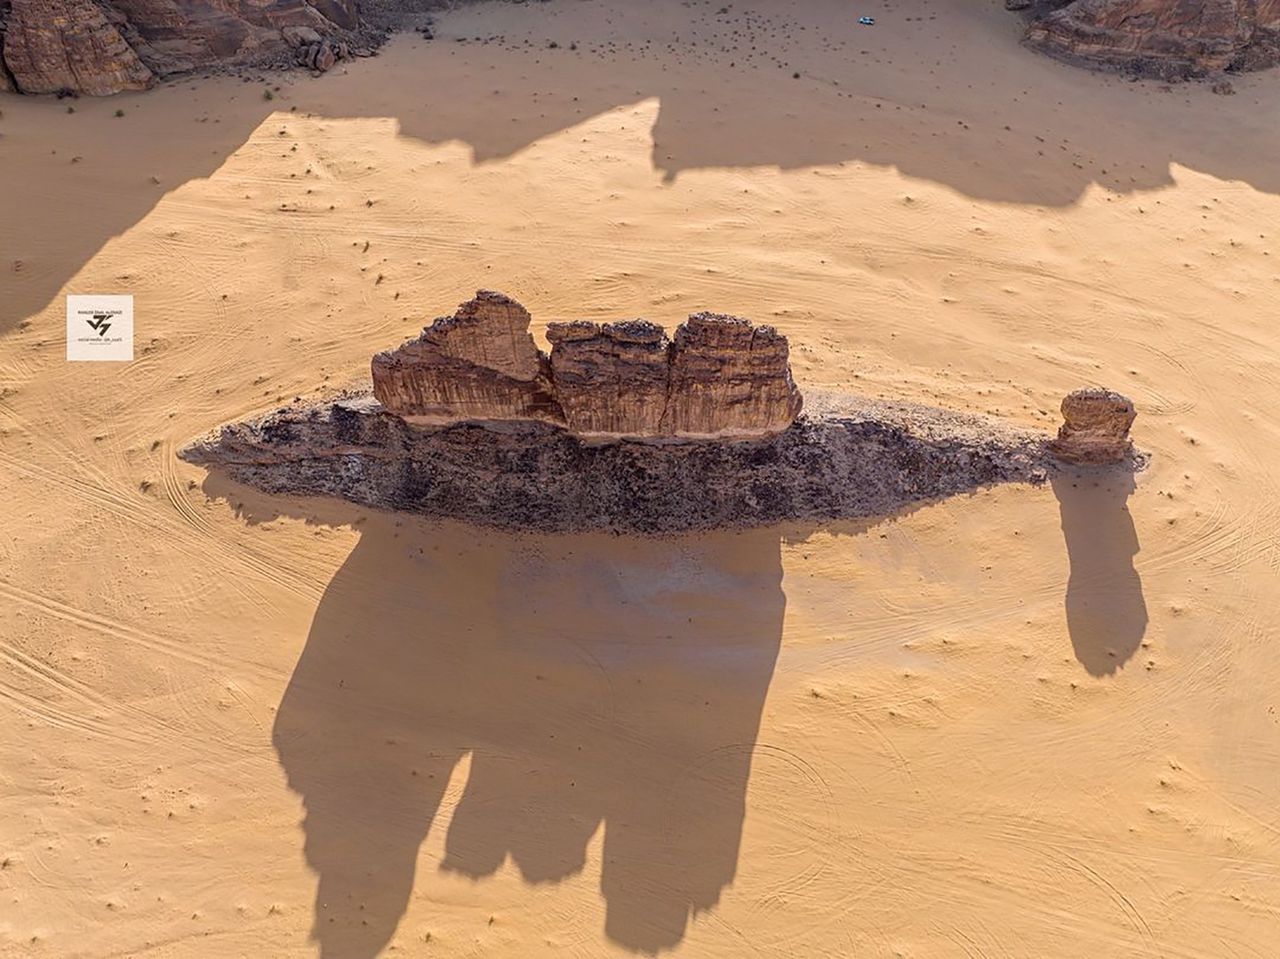 Przedziwna skała w kształcie ryby. Fotograf odnalazł ją w Arabii Saudyjskiej